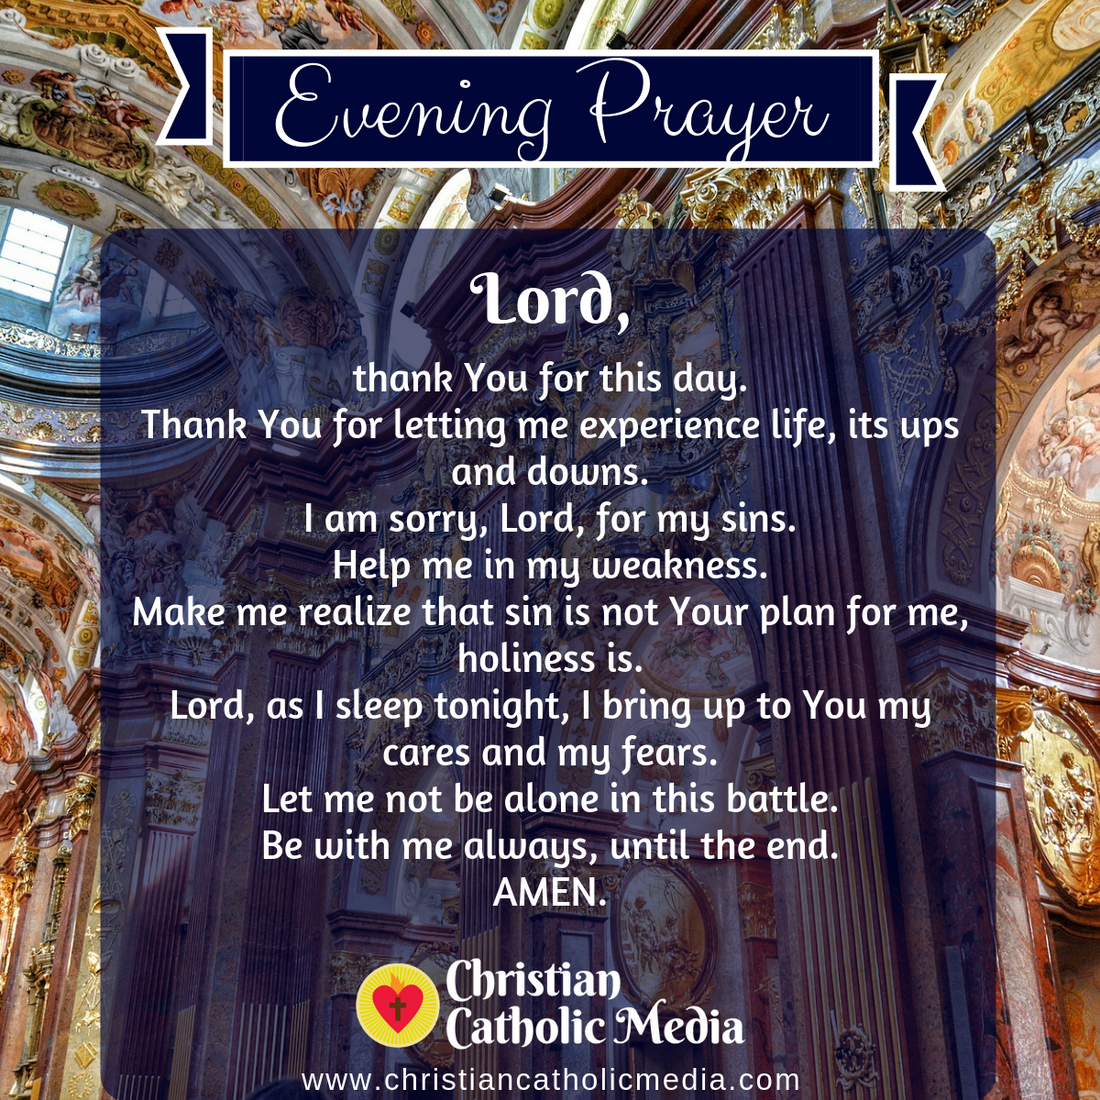 Evening Prayer Catholic Wednesday February 9, 2022